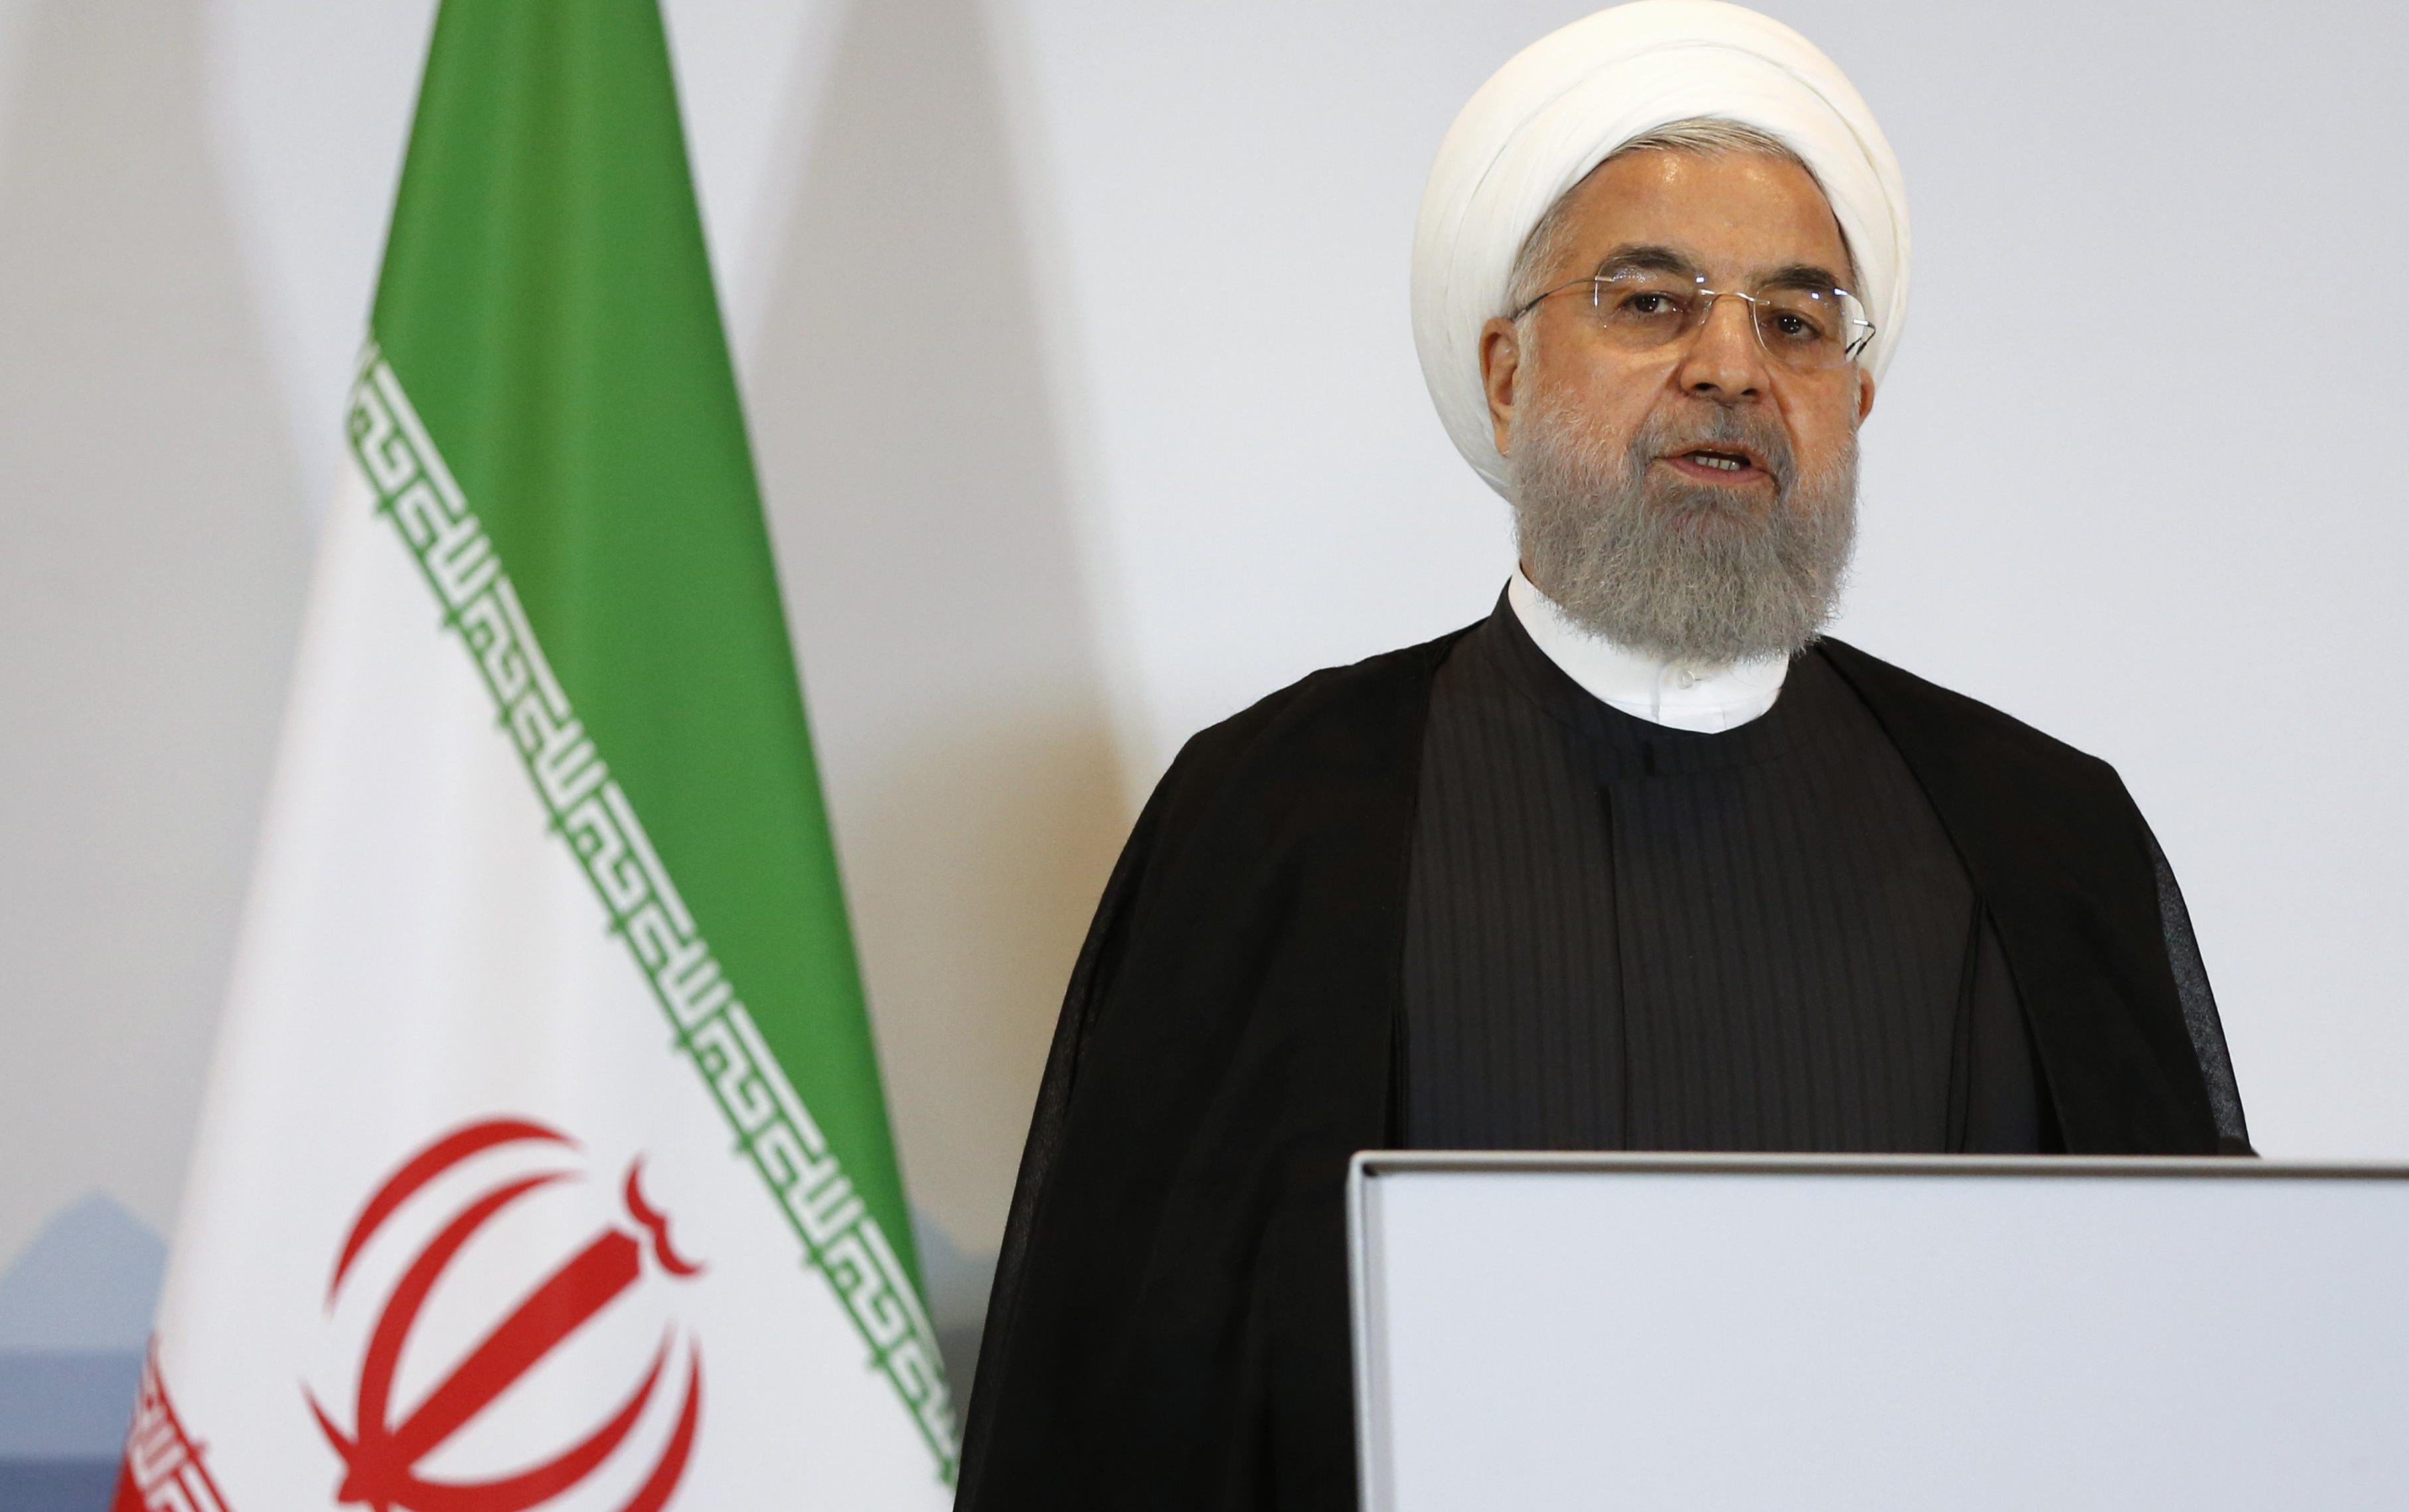 TAJNI SNIMAK PROCUREO U JAVNOST! Iranski predsednik u strahu, otpustio šefa analitičkog centra: Ovo je podrivanje pregovora sa Zapadom!  /FOTO/